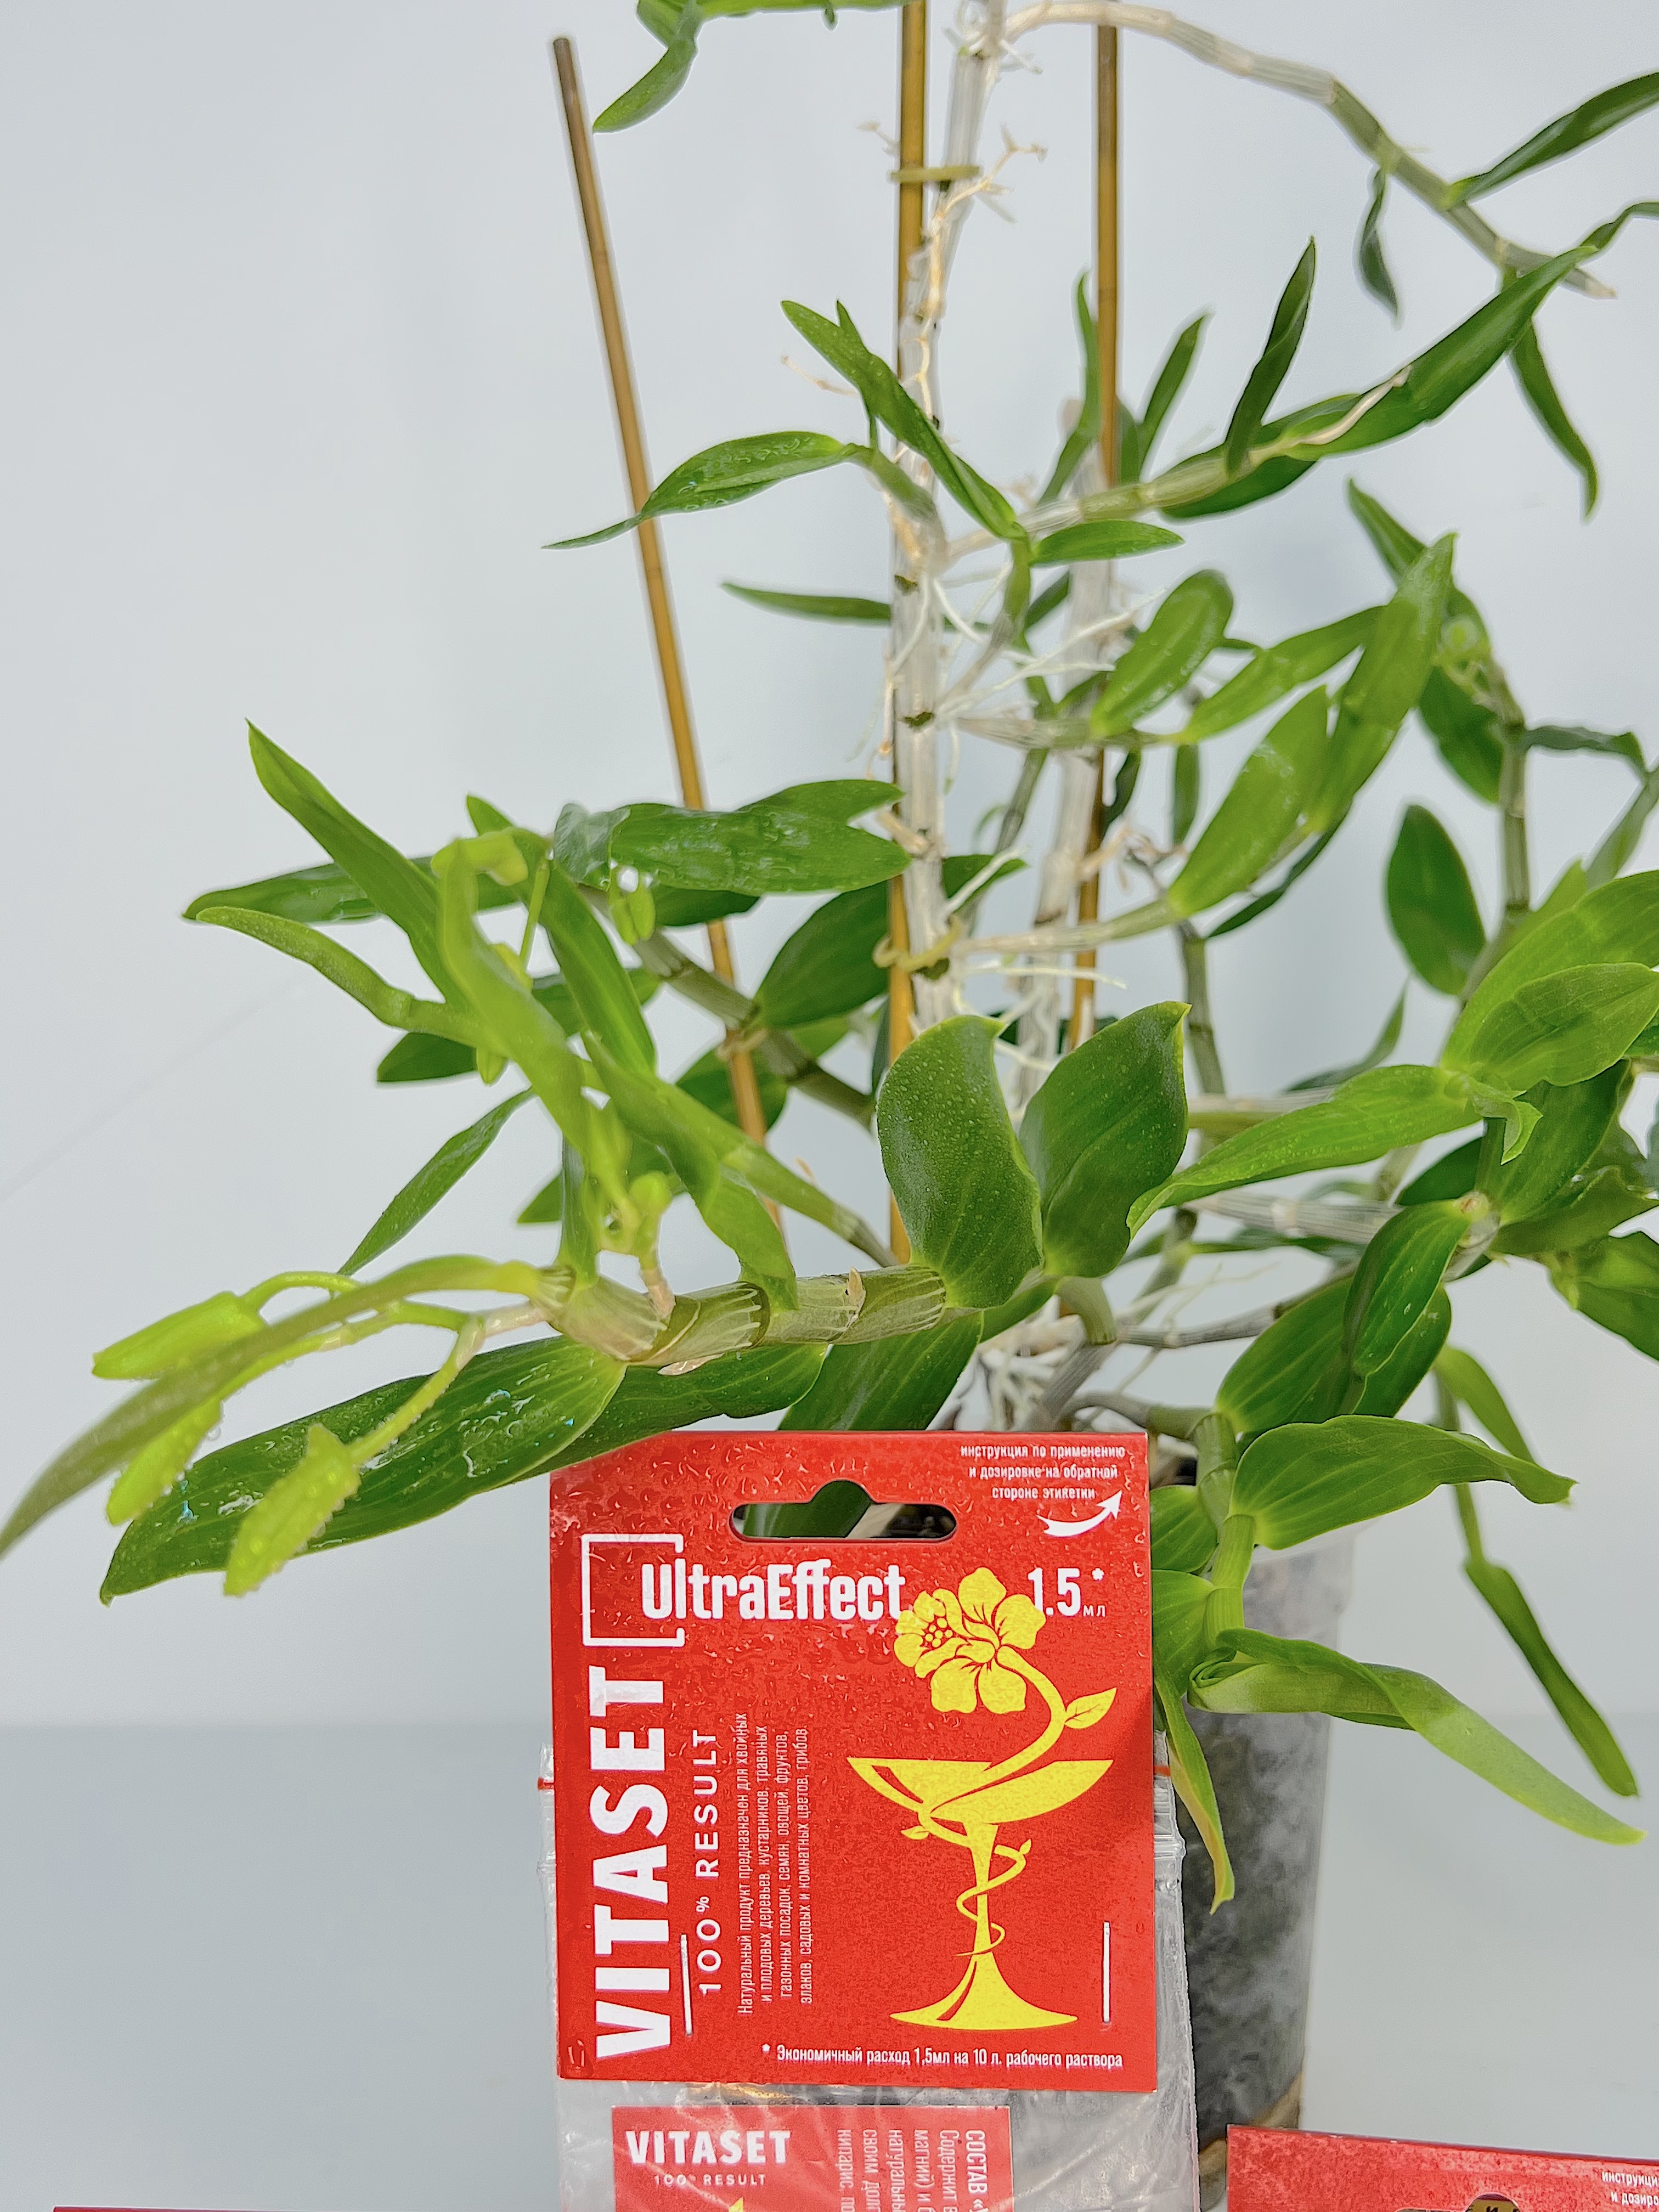 Универсальный биостимулятор роста растений UltraEffect VitaSet 100% result - Виталайзер нового поколения, 1,5мл ВитаЛайзер ВитаСет УльтраЭффект натуральны стимулятор комнатных растений